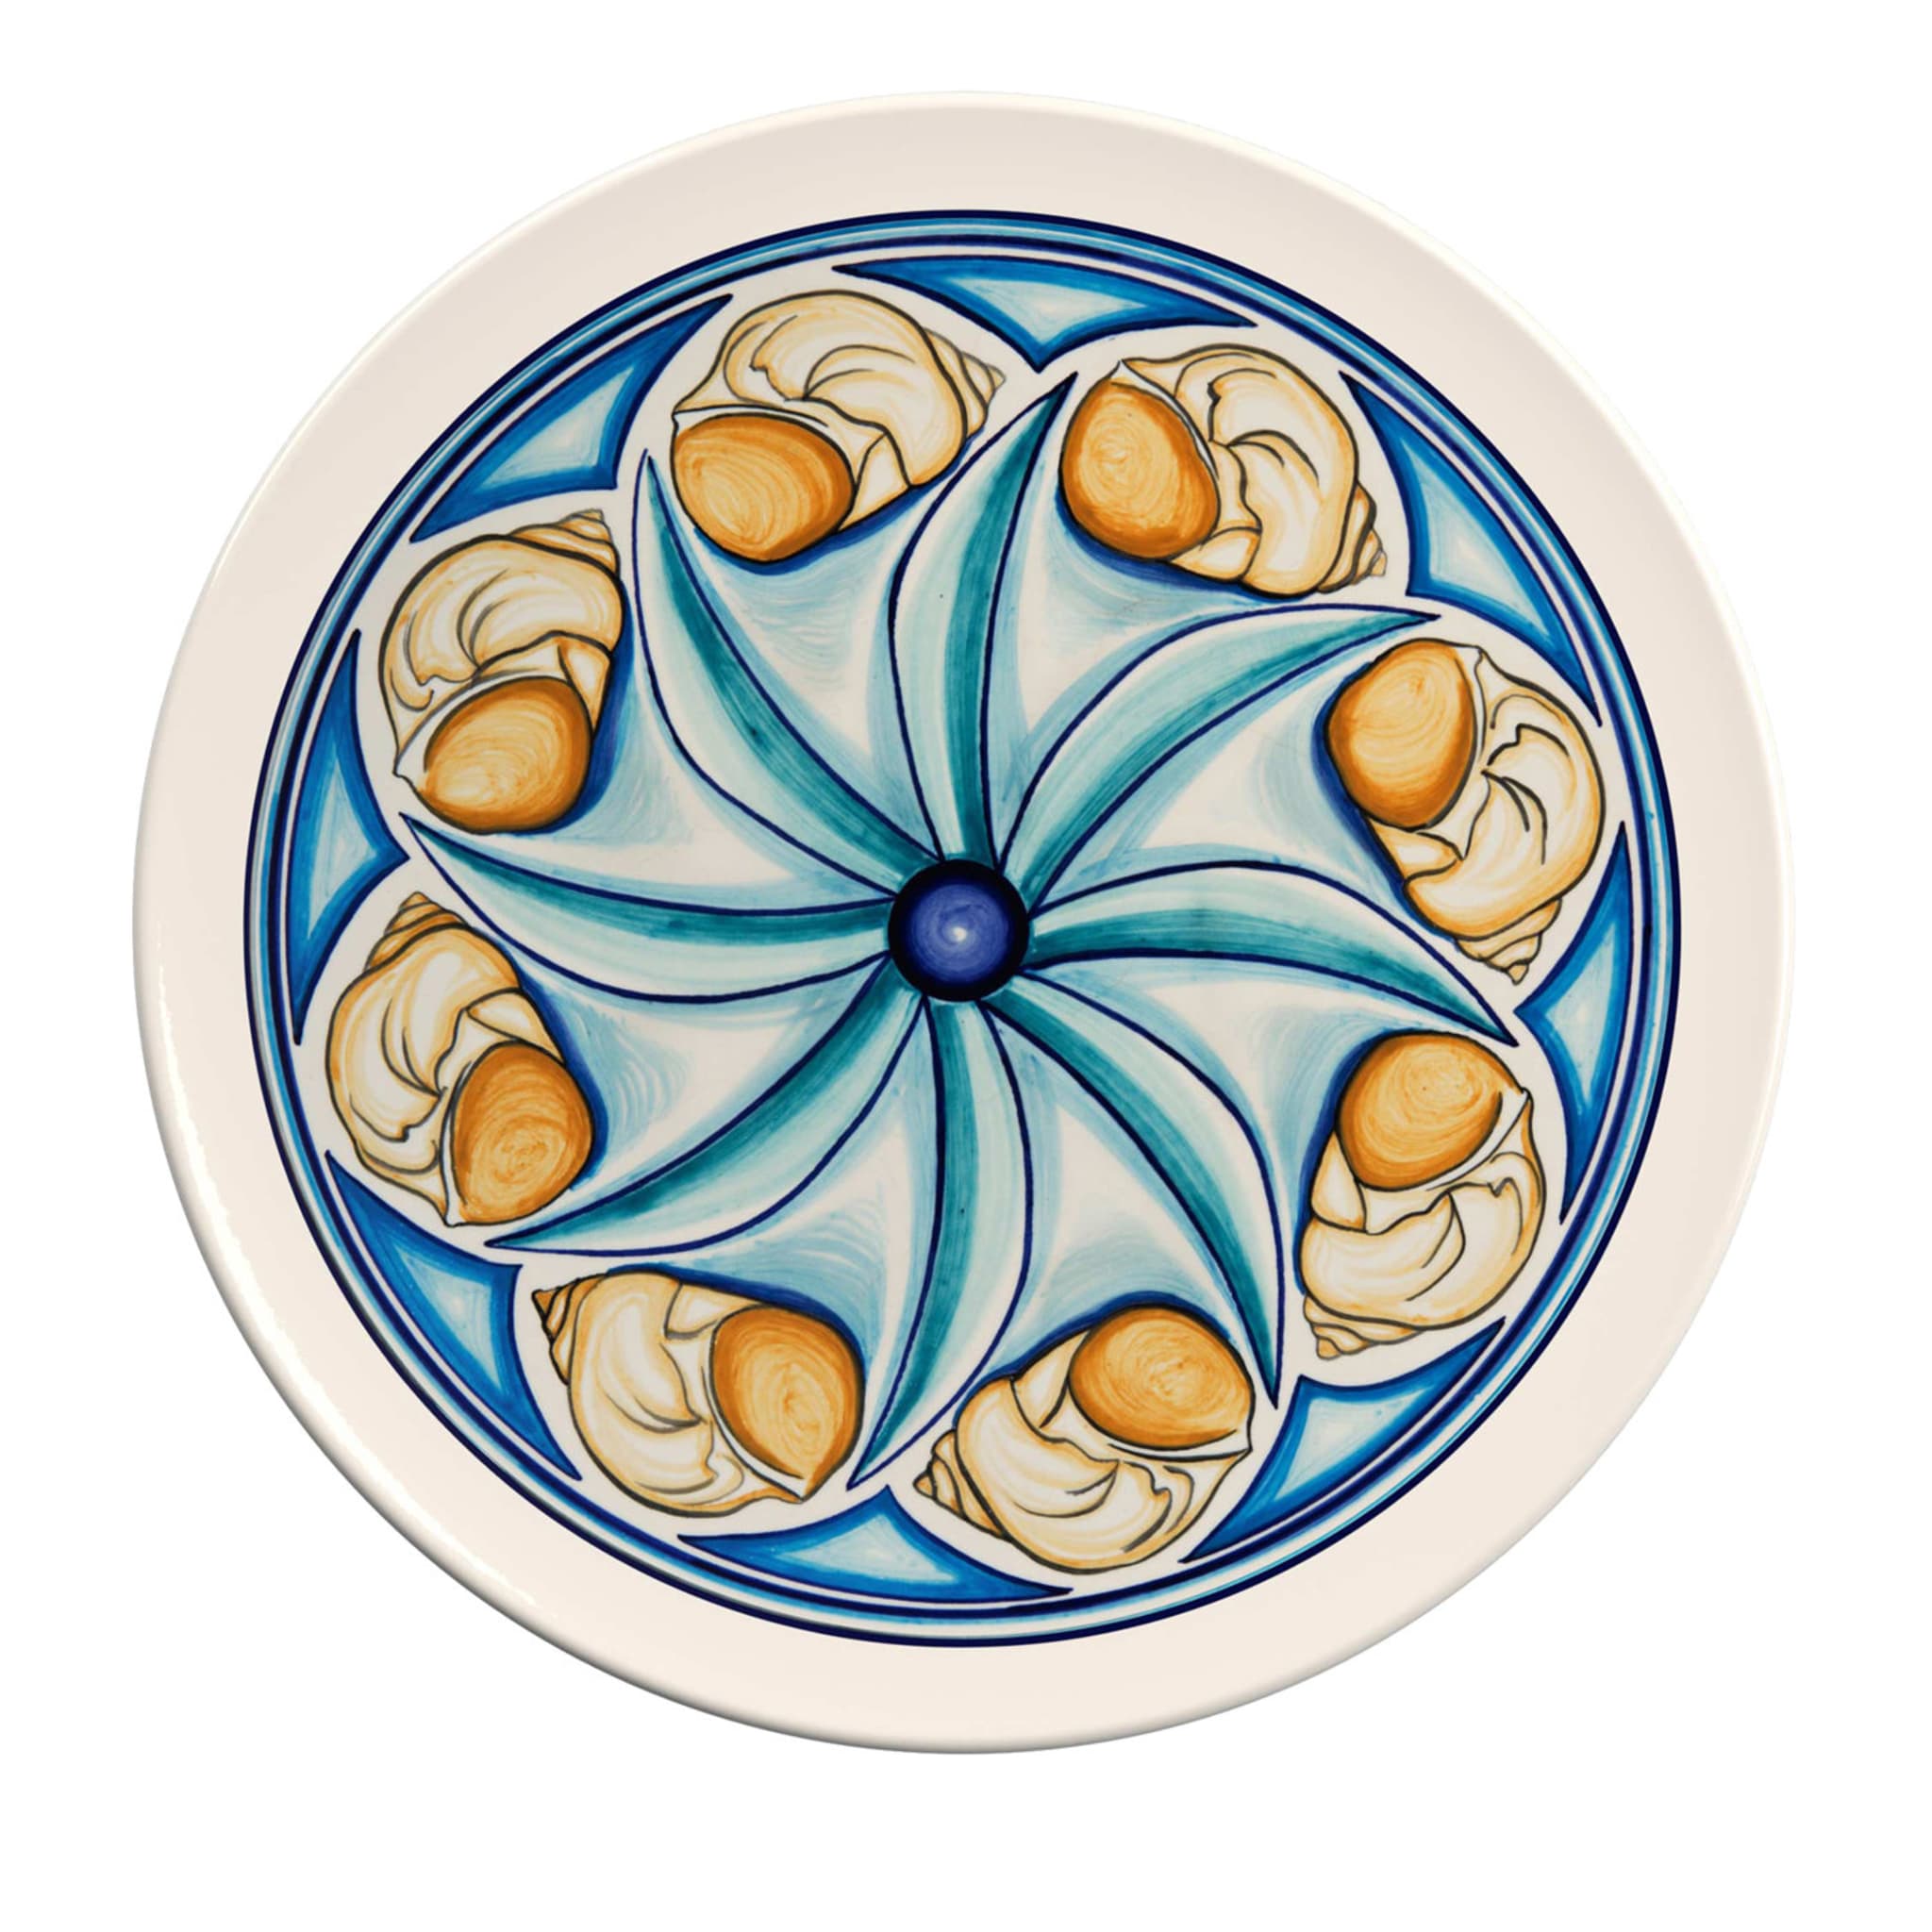 Colapesce Conchiglie Decorative Plate #3